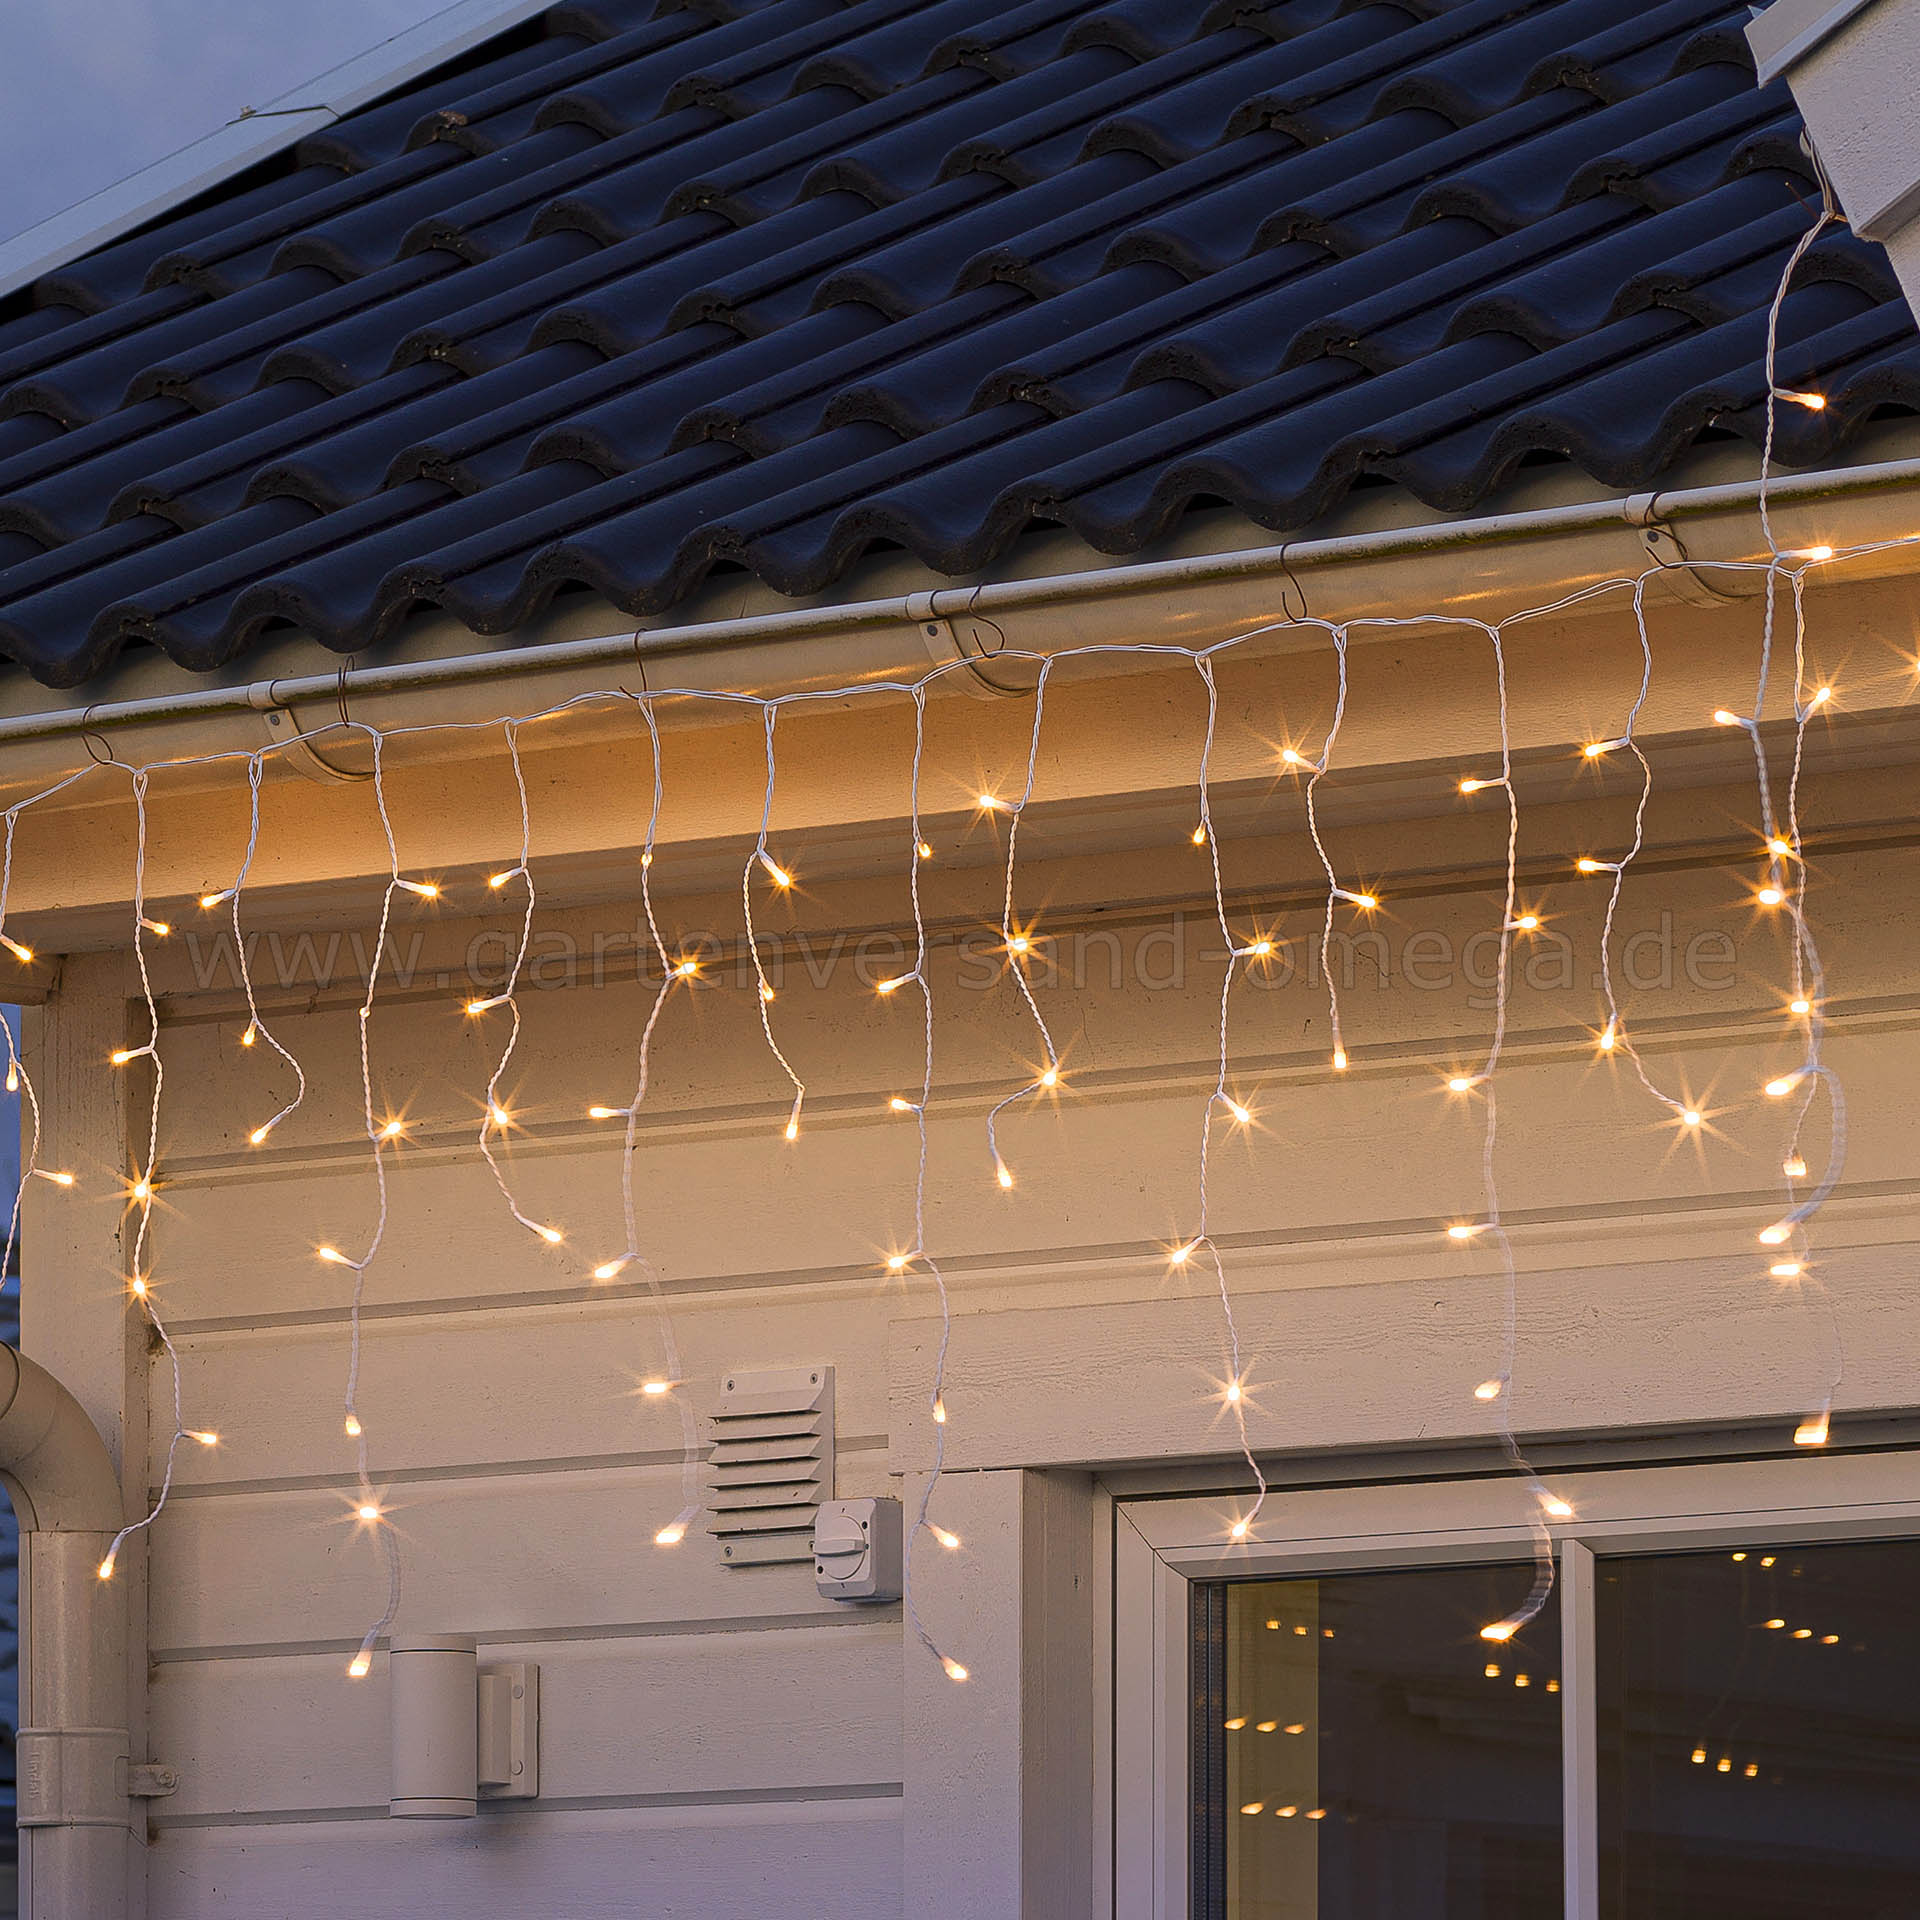 Glimmereffekt LED-Lichtvorhang Eisregenvorhang Dachrinnen, gefrostet - Lichtfarbe, warme Weihnachtsaußenbeleuchtung Lichterkette blinkend Lichterkettenvorhang, Eisregen-Lichterkette, Lichtervorhang für Lichteffekt, Dachrinnenlichterkette, LED